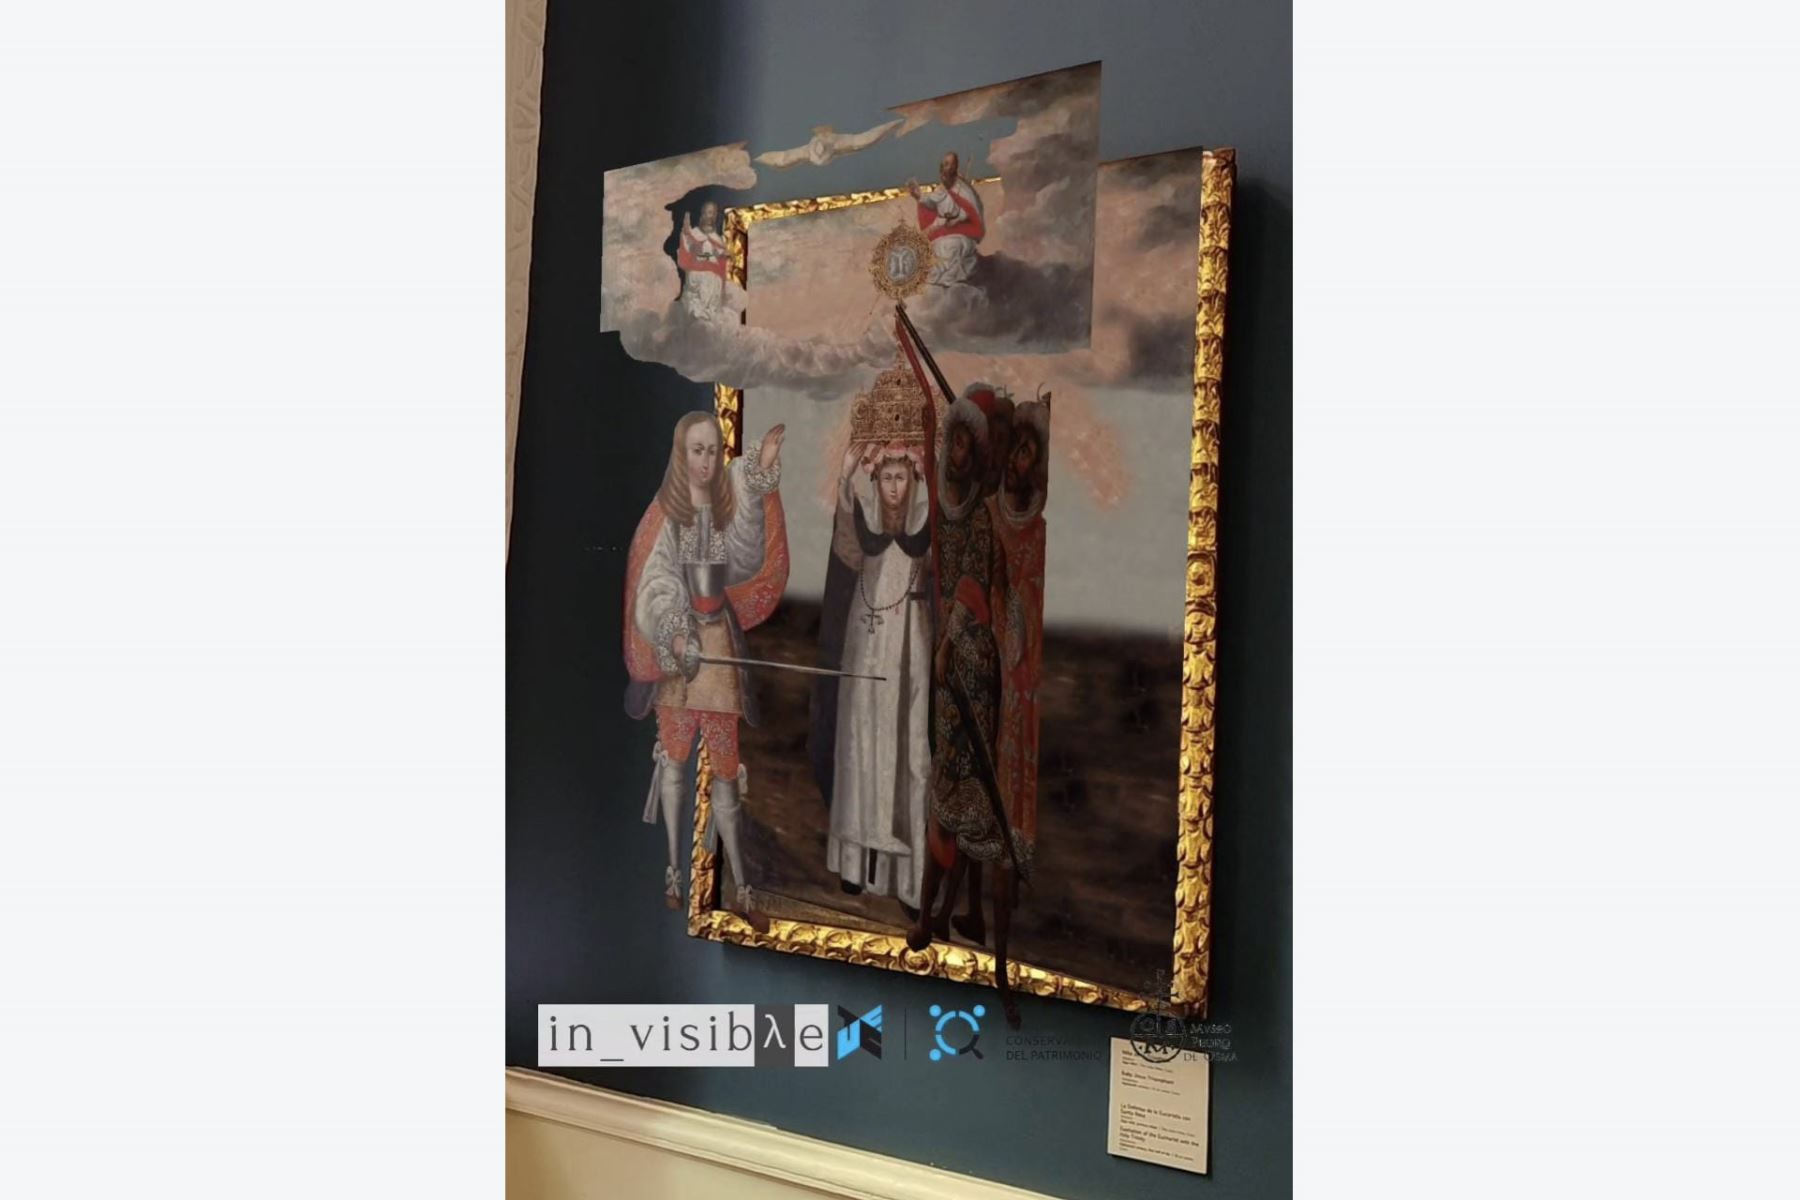 Investigadores de UTEC revelan datos ocultos de 13 obras del Museo Pedro de Osma mediante realidad aumentada. Foto: DIfusión